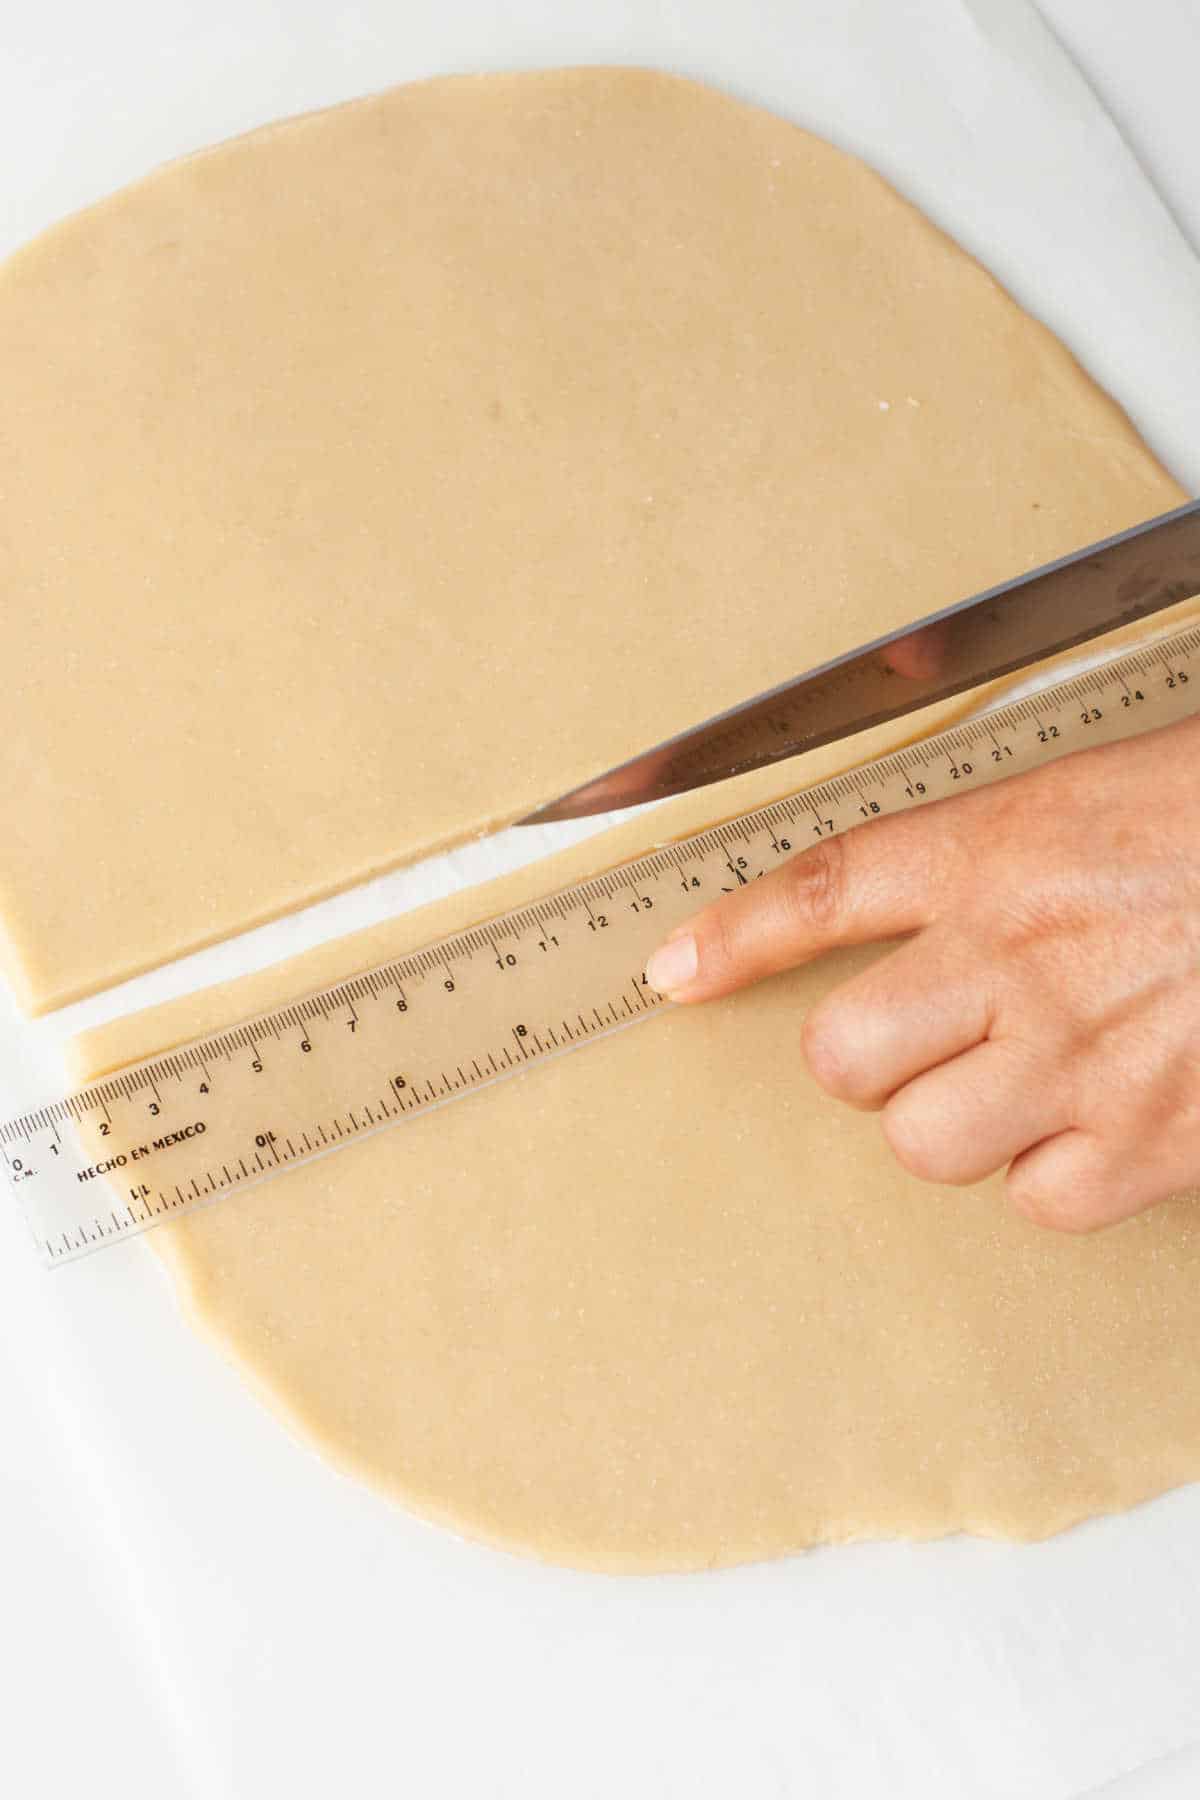 A knife cutting a strip of pie dough along a ruler. 